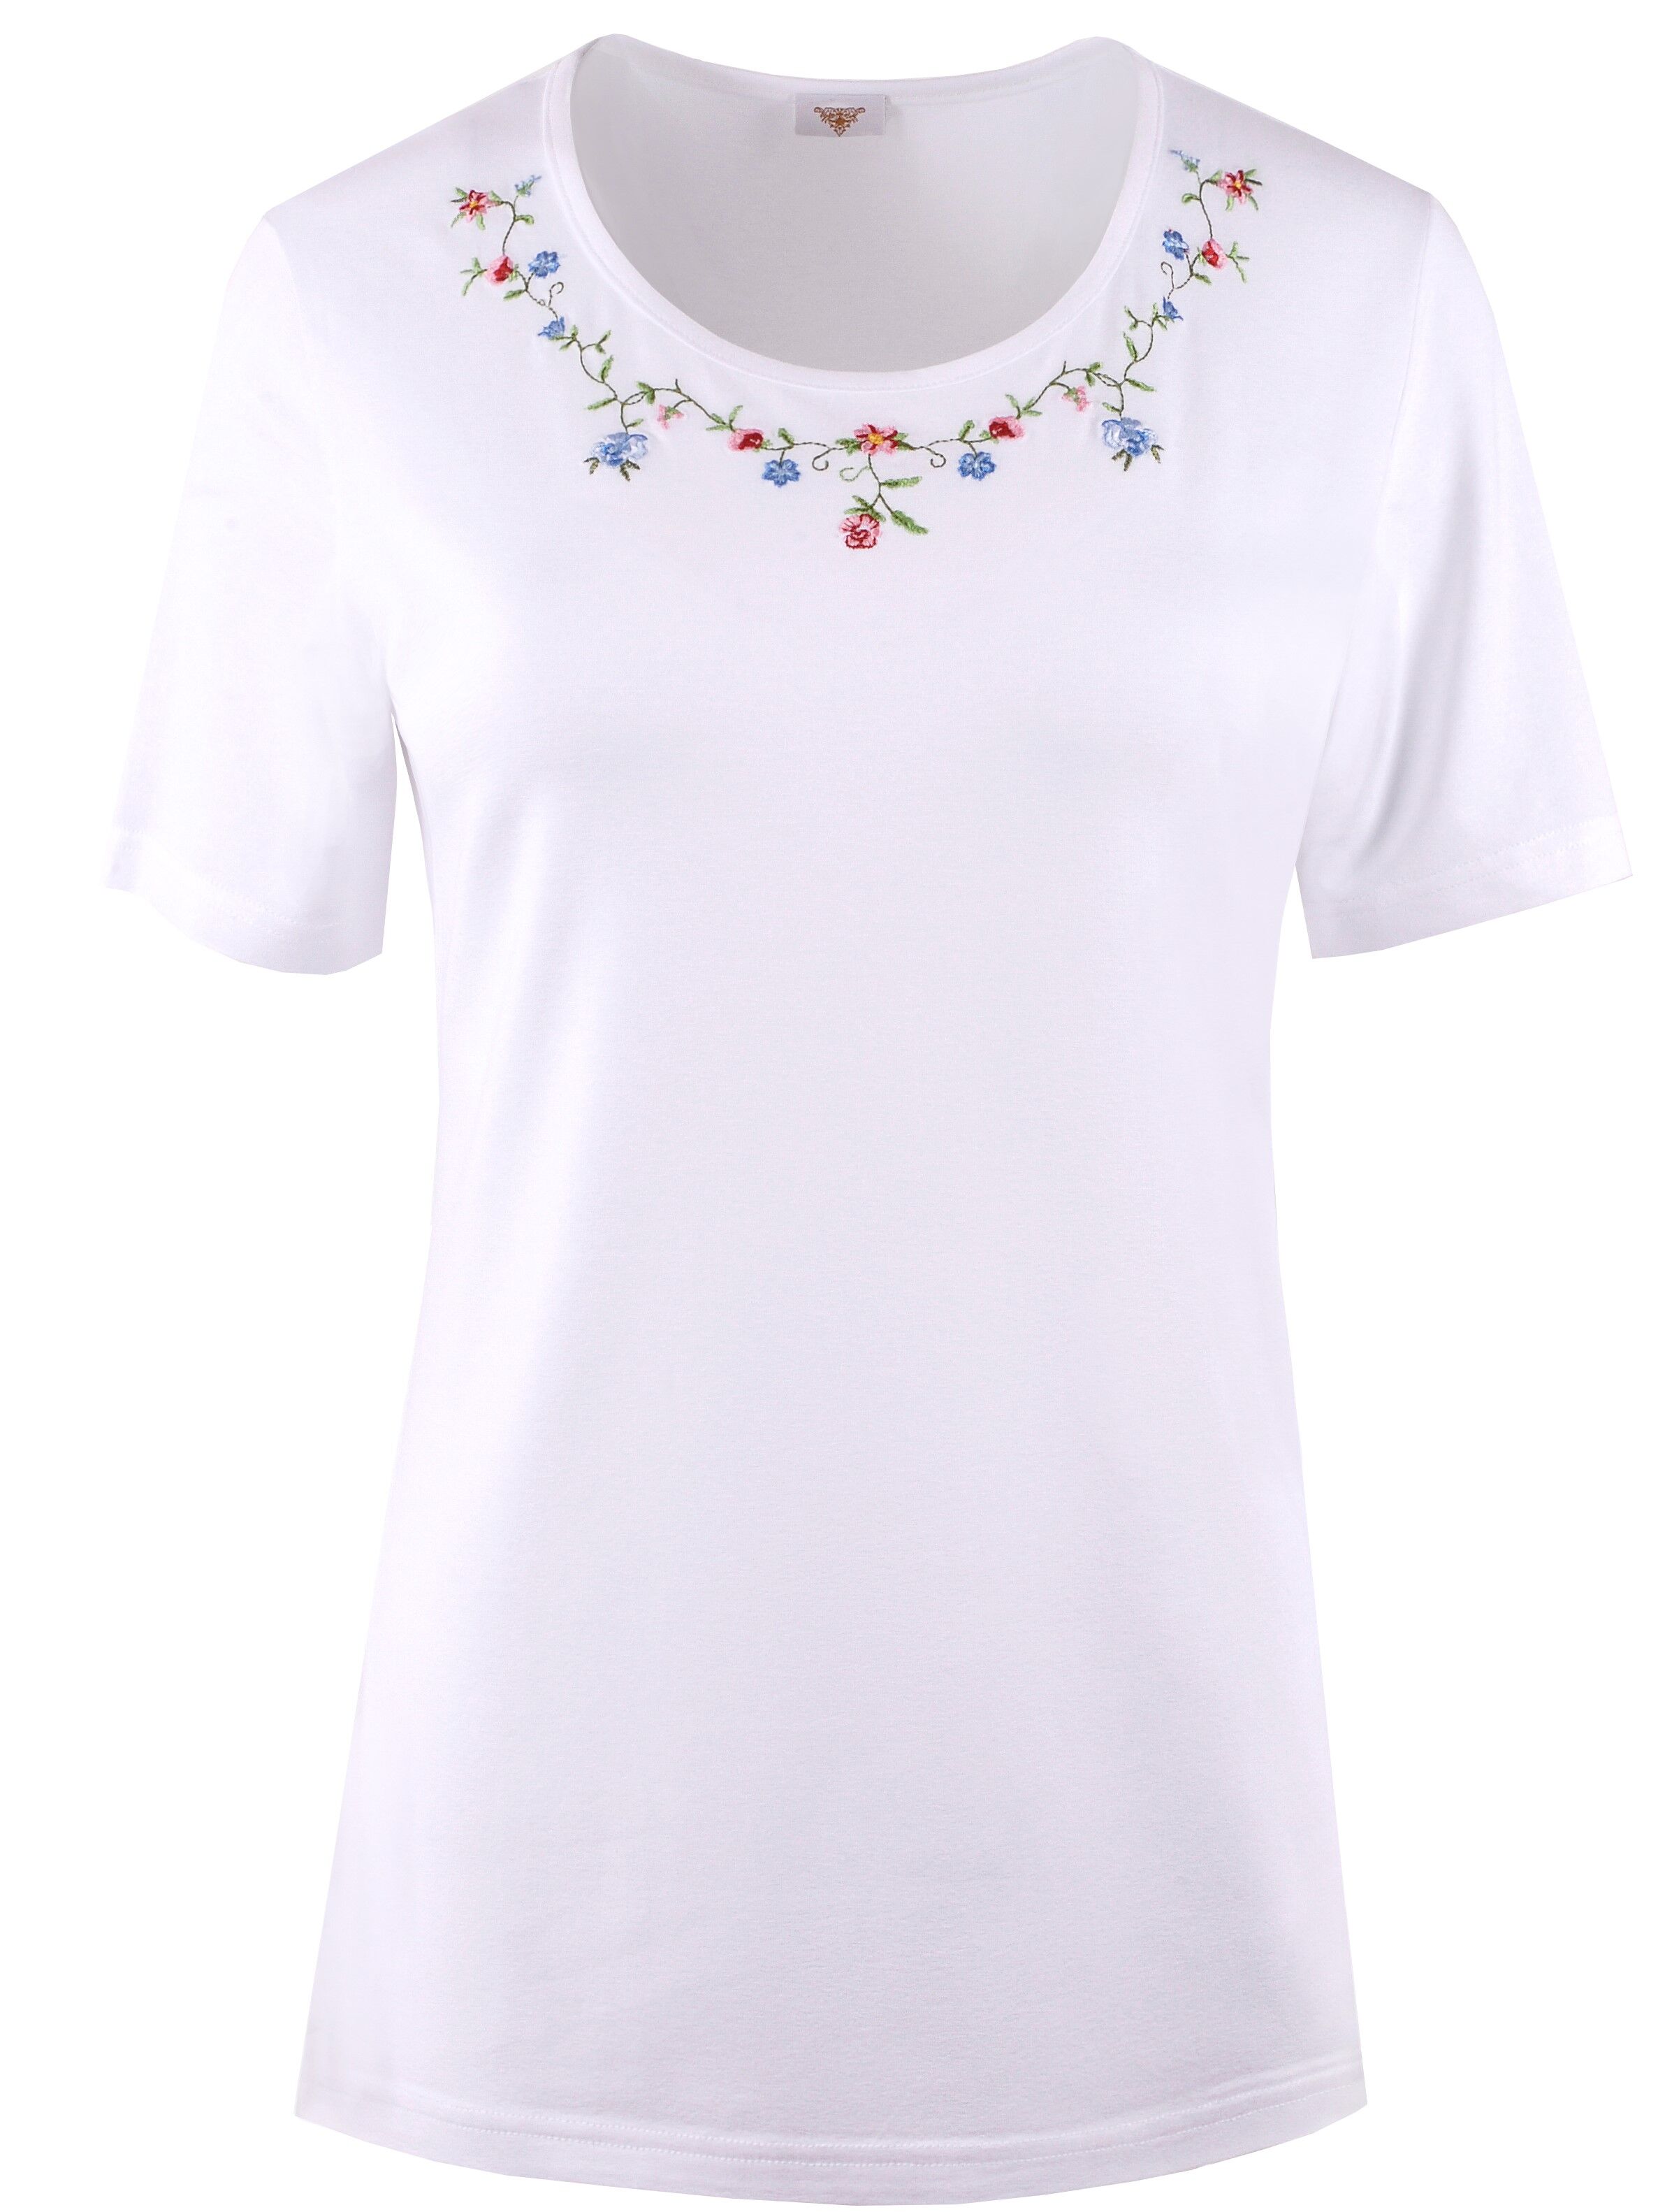 PREMIUM Trachtenshirt Damen T-Shirt lang Blumen-Stickerei Weiß